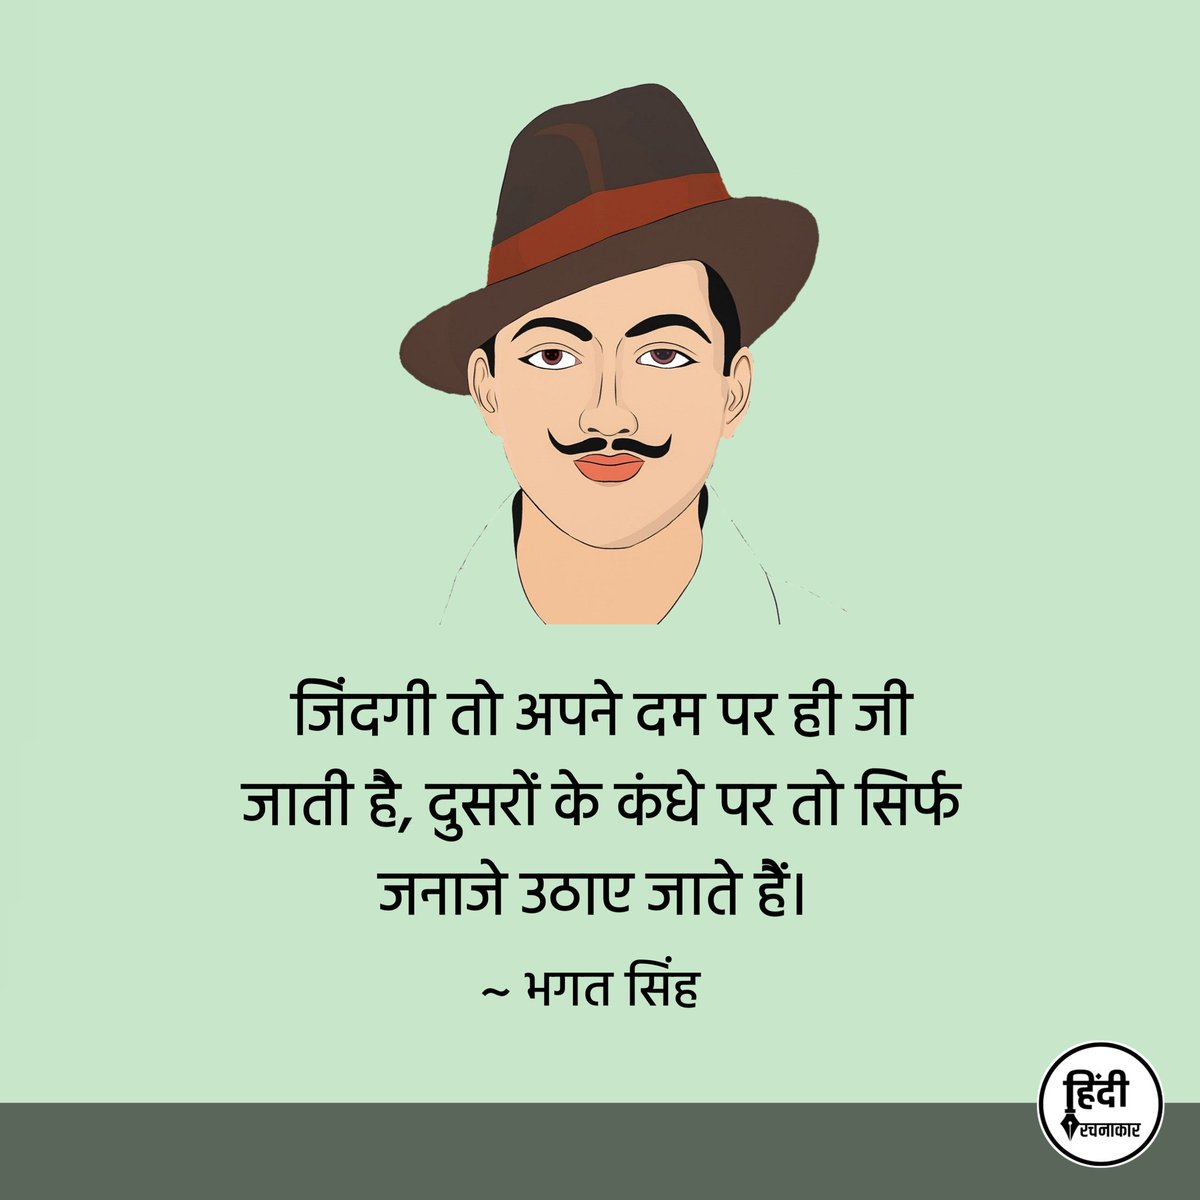 जिंदगी तो अपने दम पर ही जी जाती है, दुसरों के कंधे पर तो सिर्फ जनाजे उठाए जाते हैं। 

~ भगत सिंह

#bhagatsingh 
#martyrsday 
#Hindirachnakaar